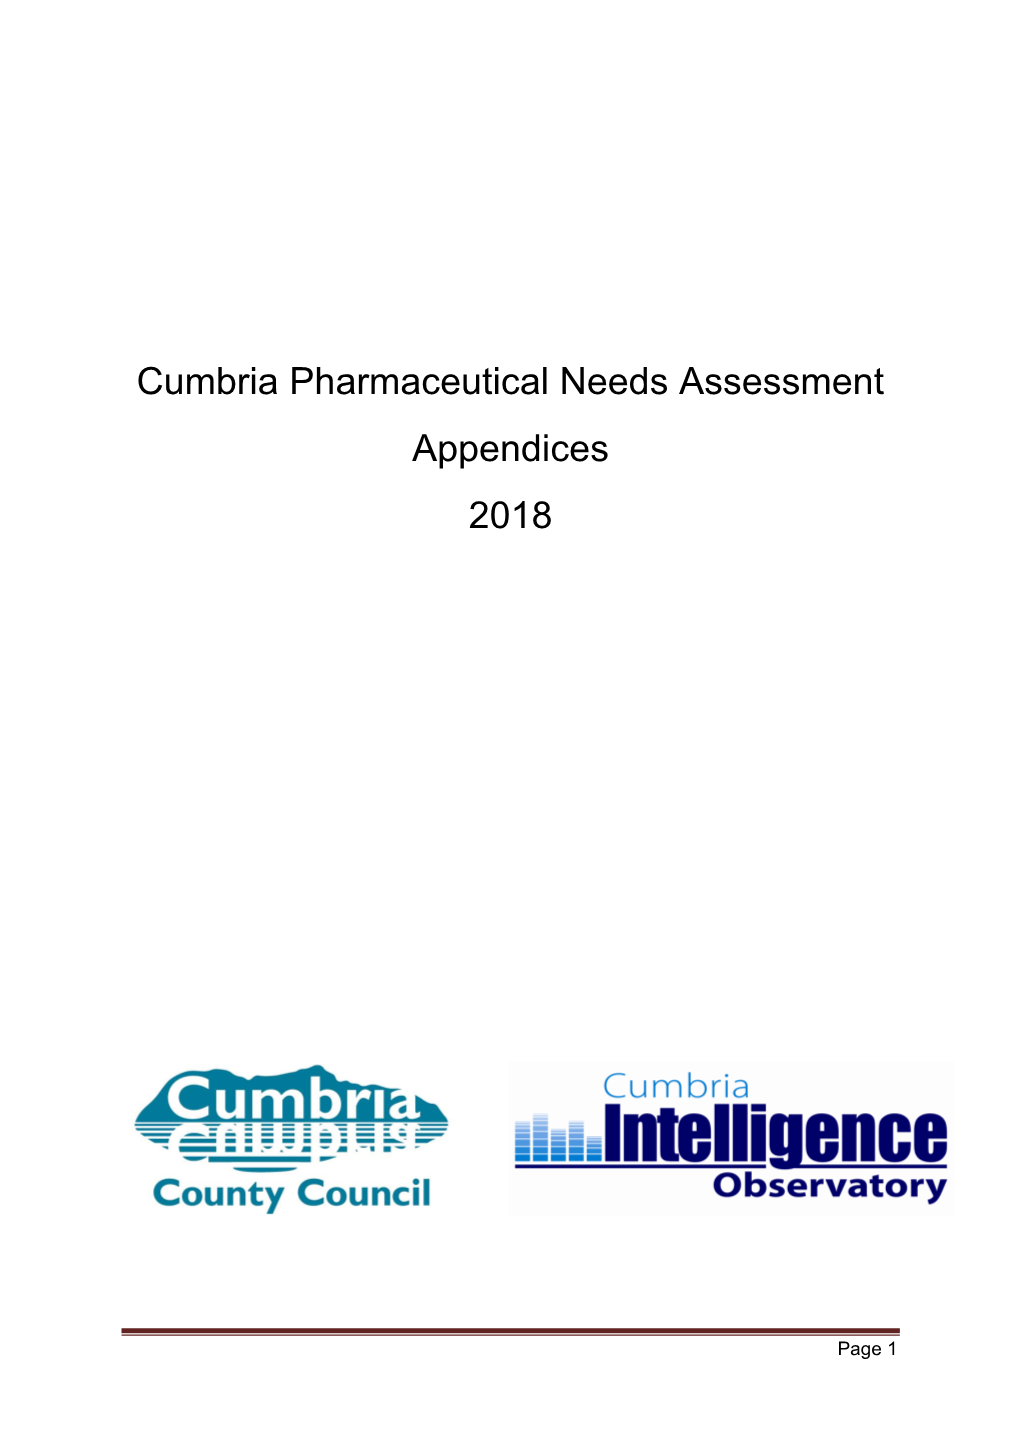 Cumbria Pharmaceutical Needs Assessment 2018: Appendices